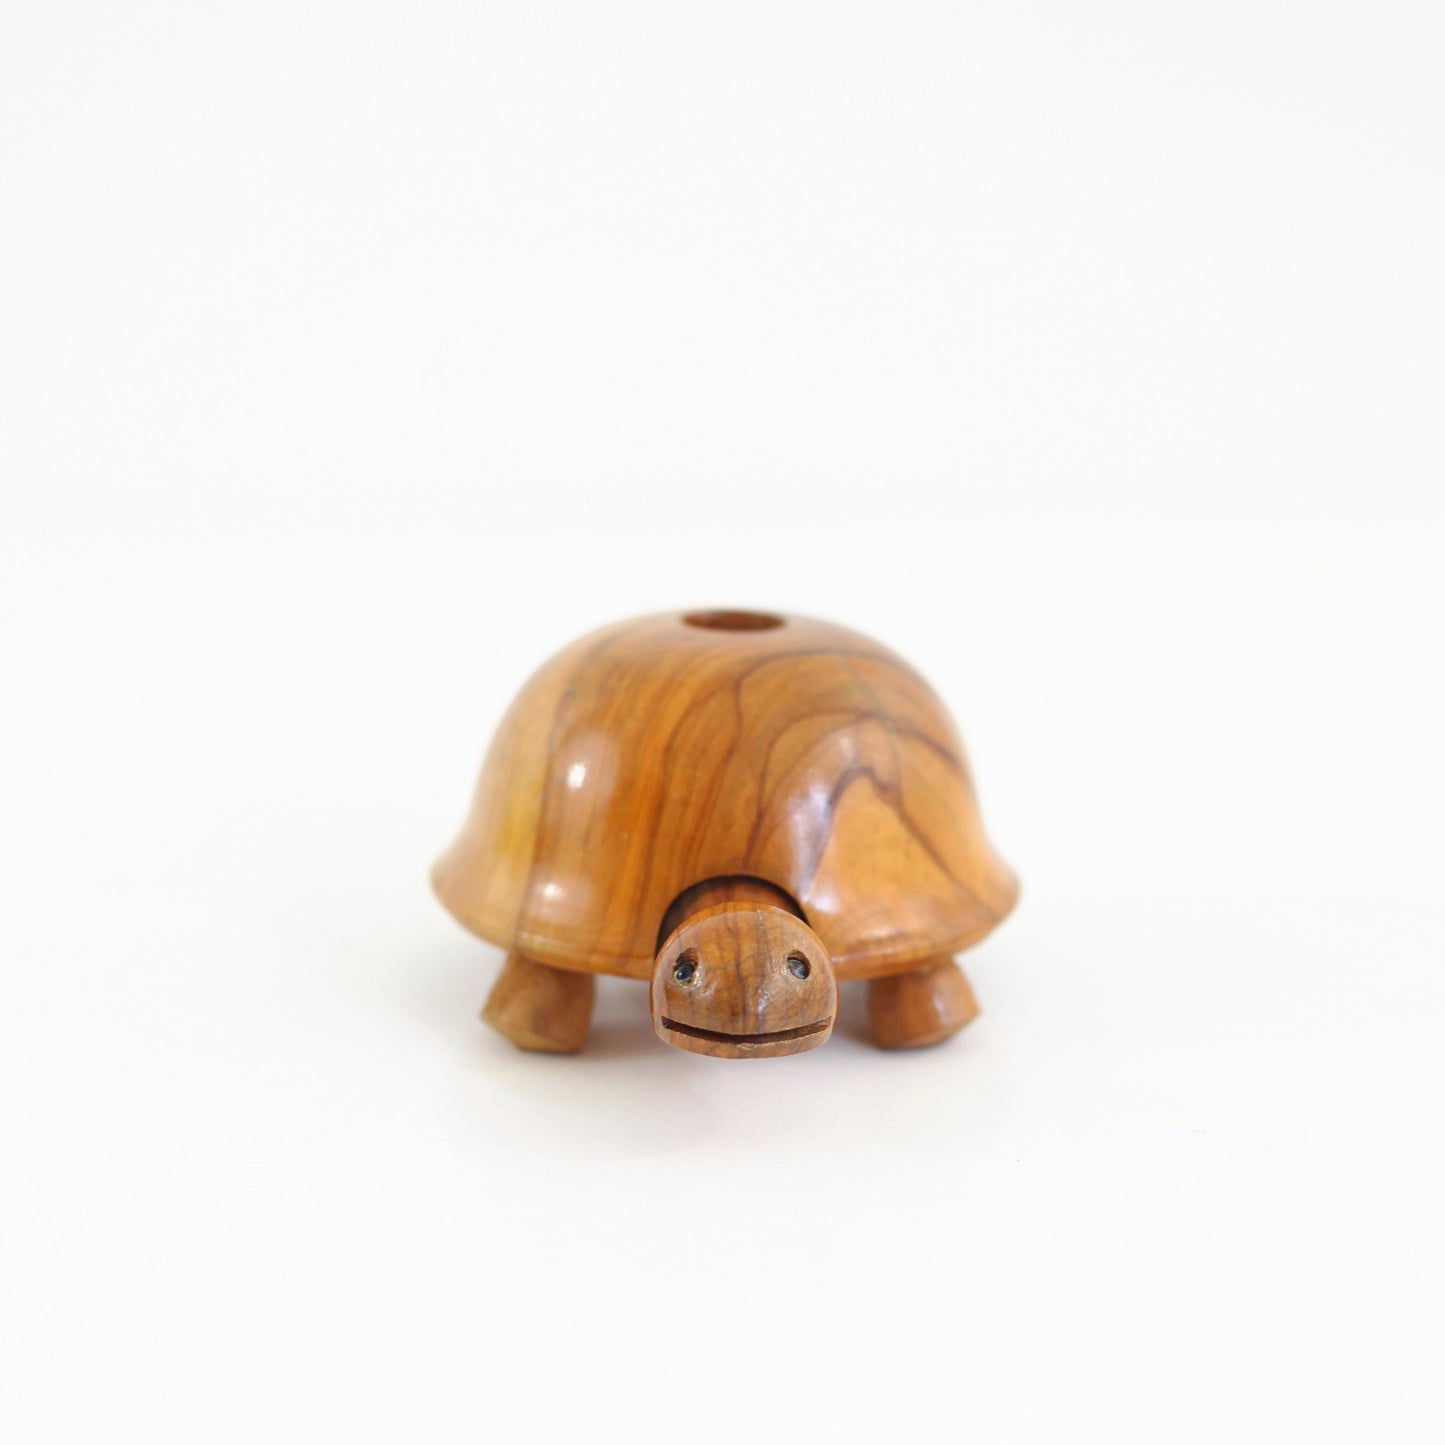 SOLD - Vintage Wooden Turtle Candle Holder